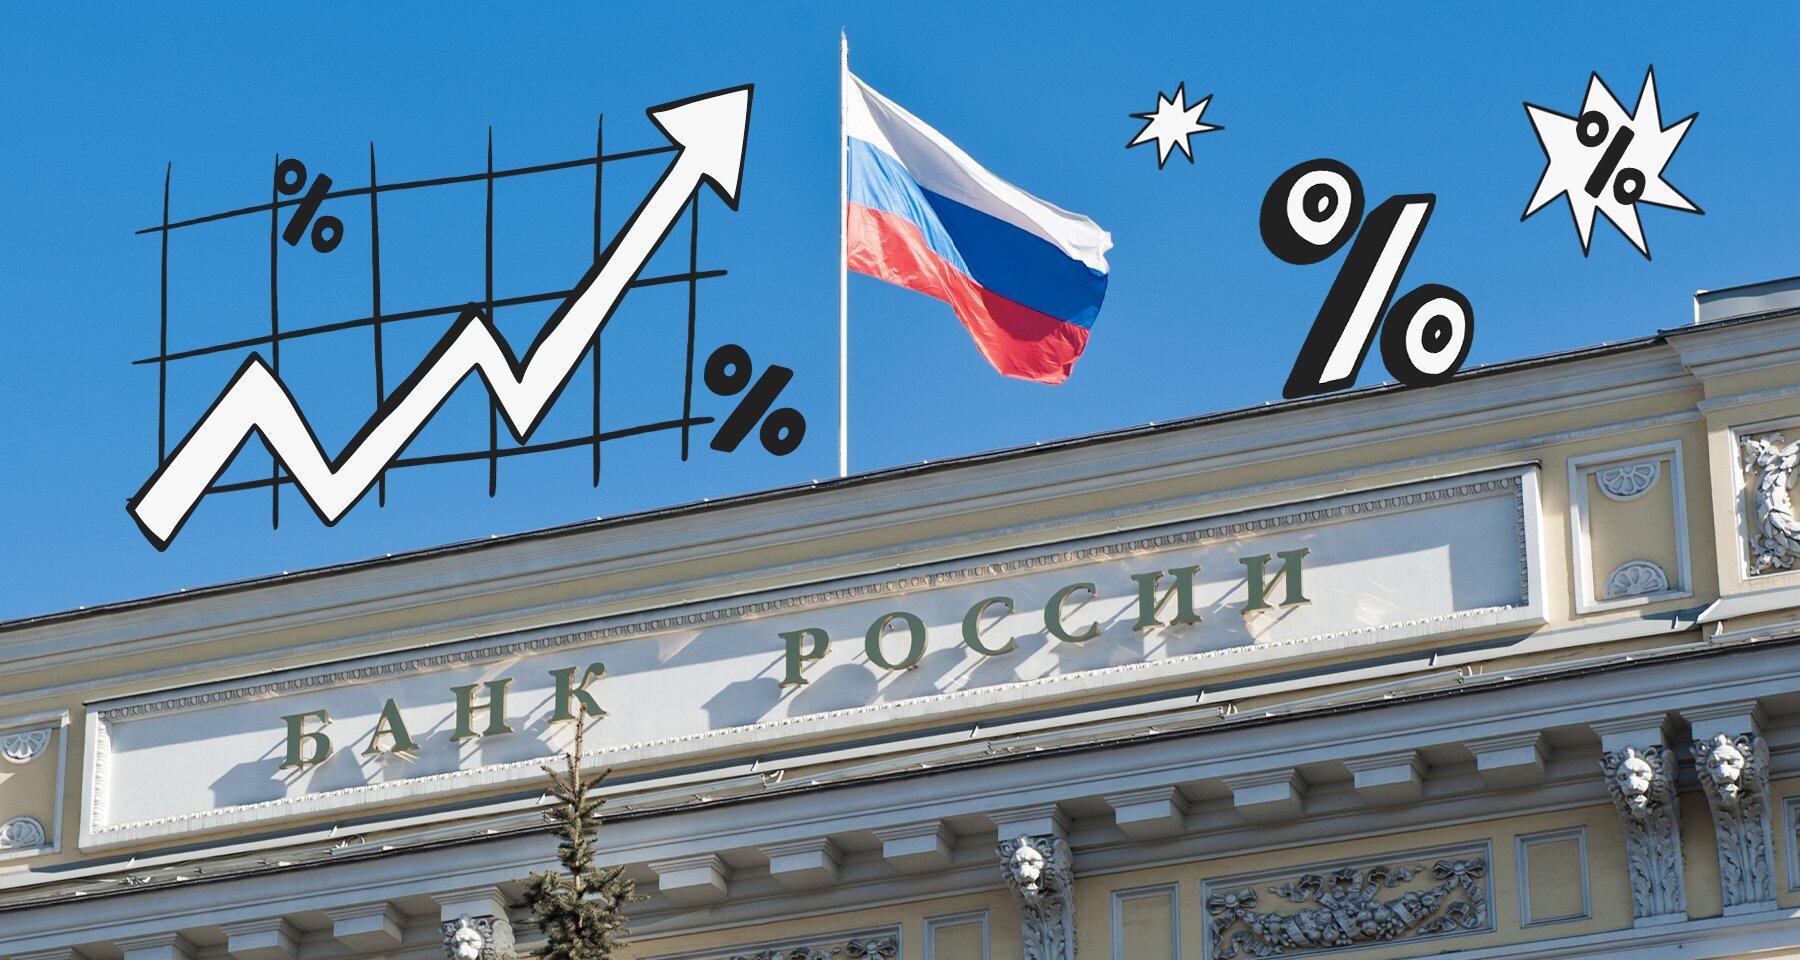 Подробнее о "Банк России поднял ключевую ставку до 8,5%"